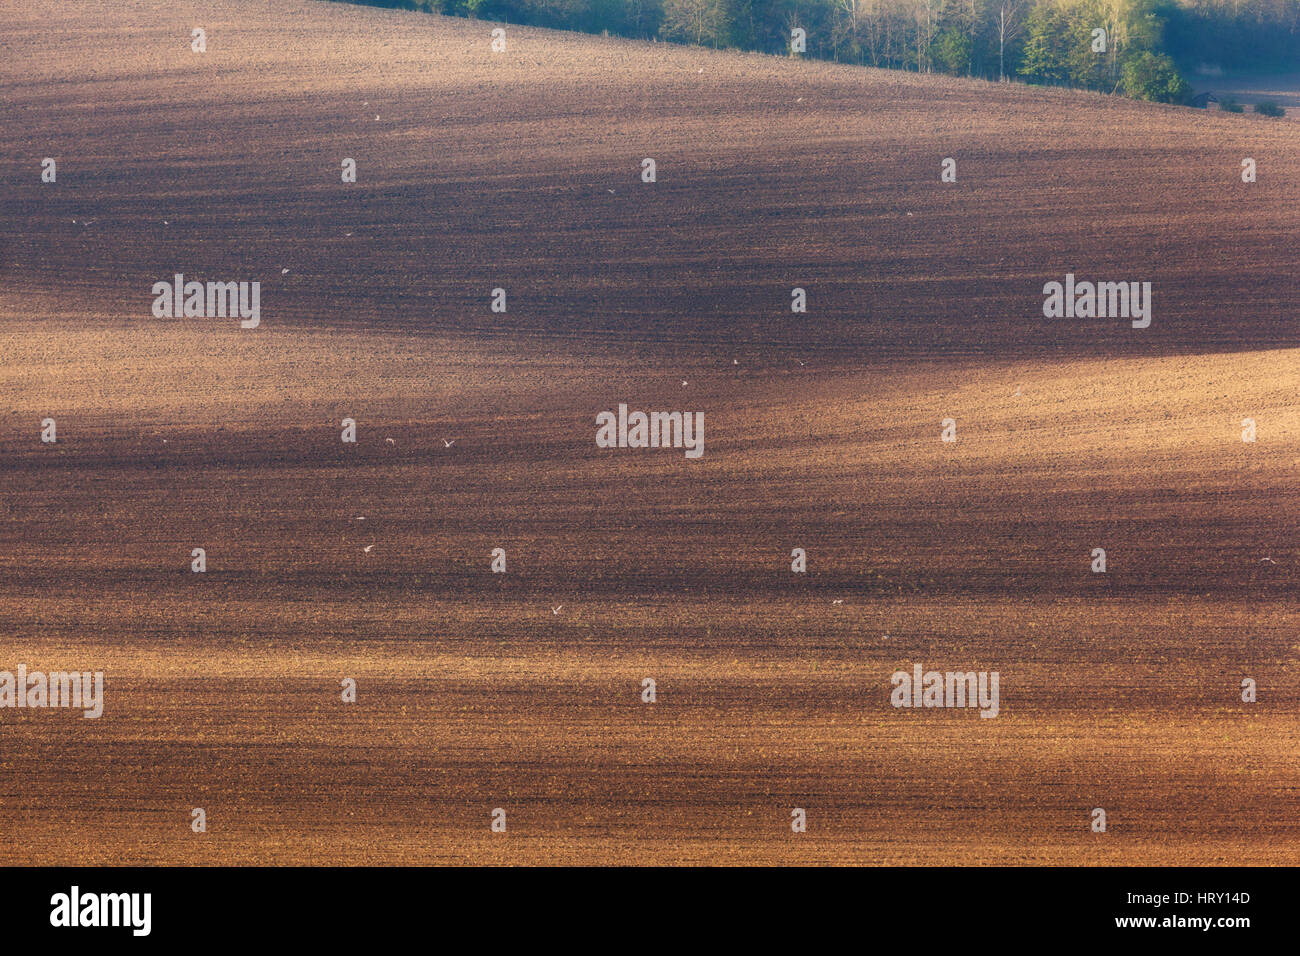 Bellissimo paesaggio minimalista con striped campi ondulati della Moravia del sud al tramonto. Natura astratta con uno sfondo marrone terra e alberi Foto Stock